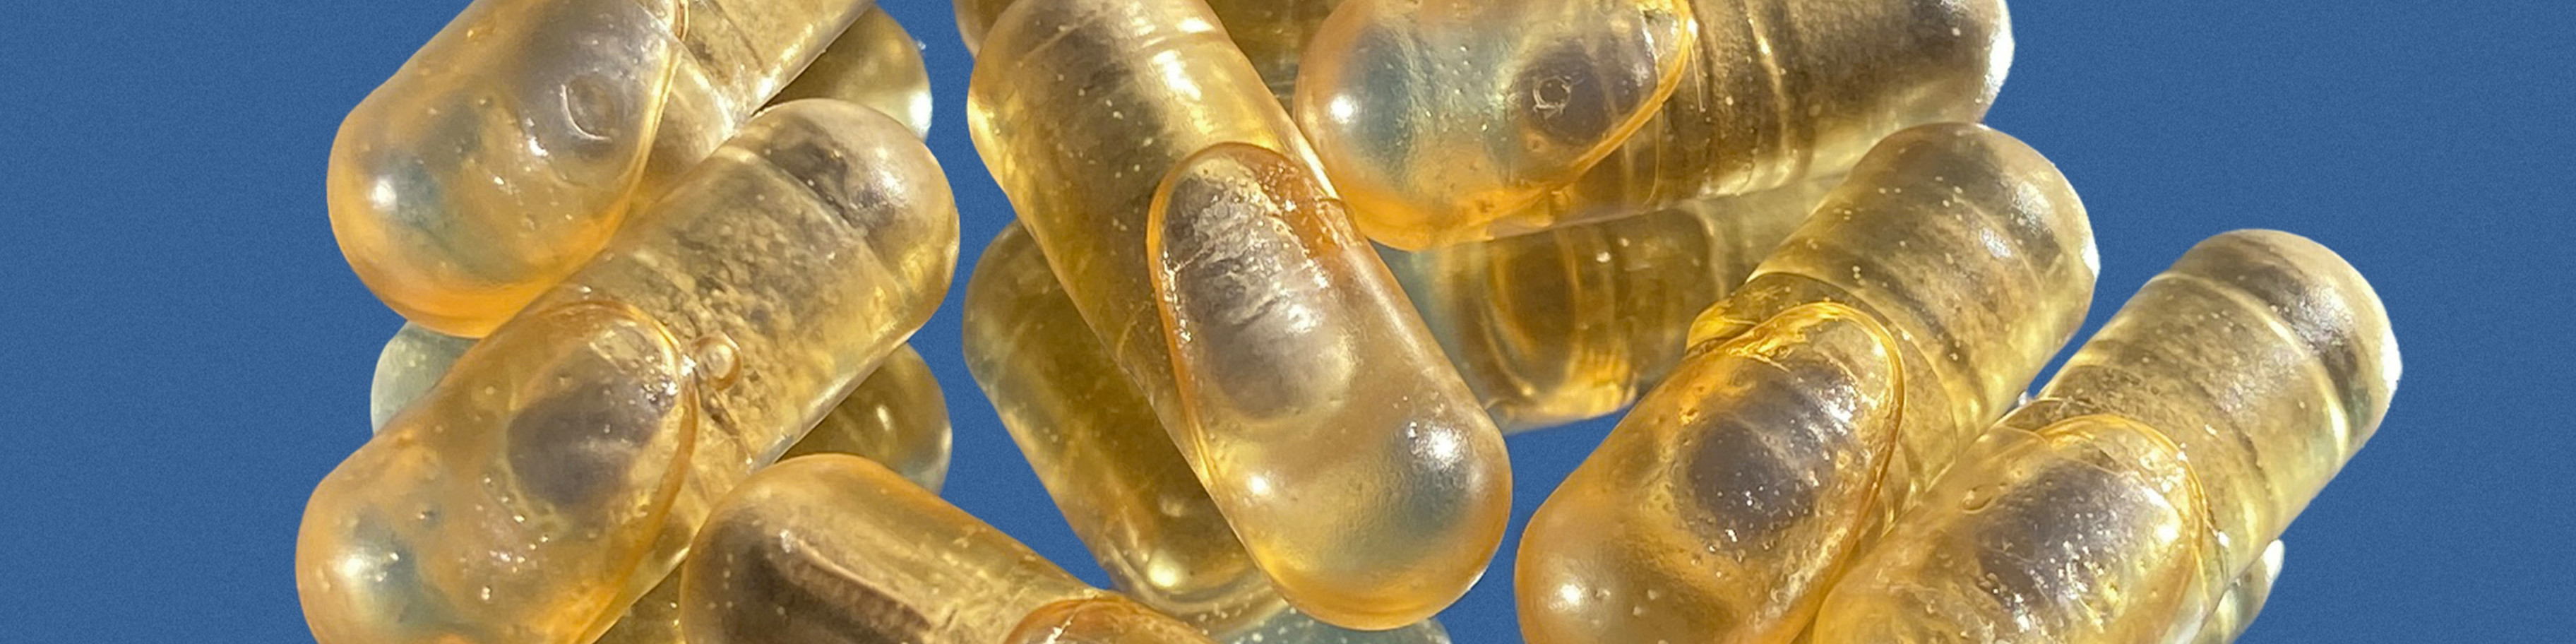 Several prenatal vitamin capsules.